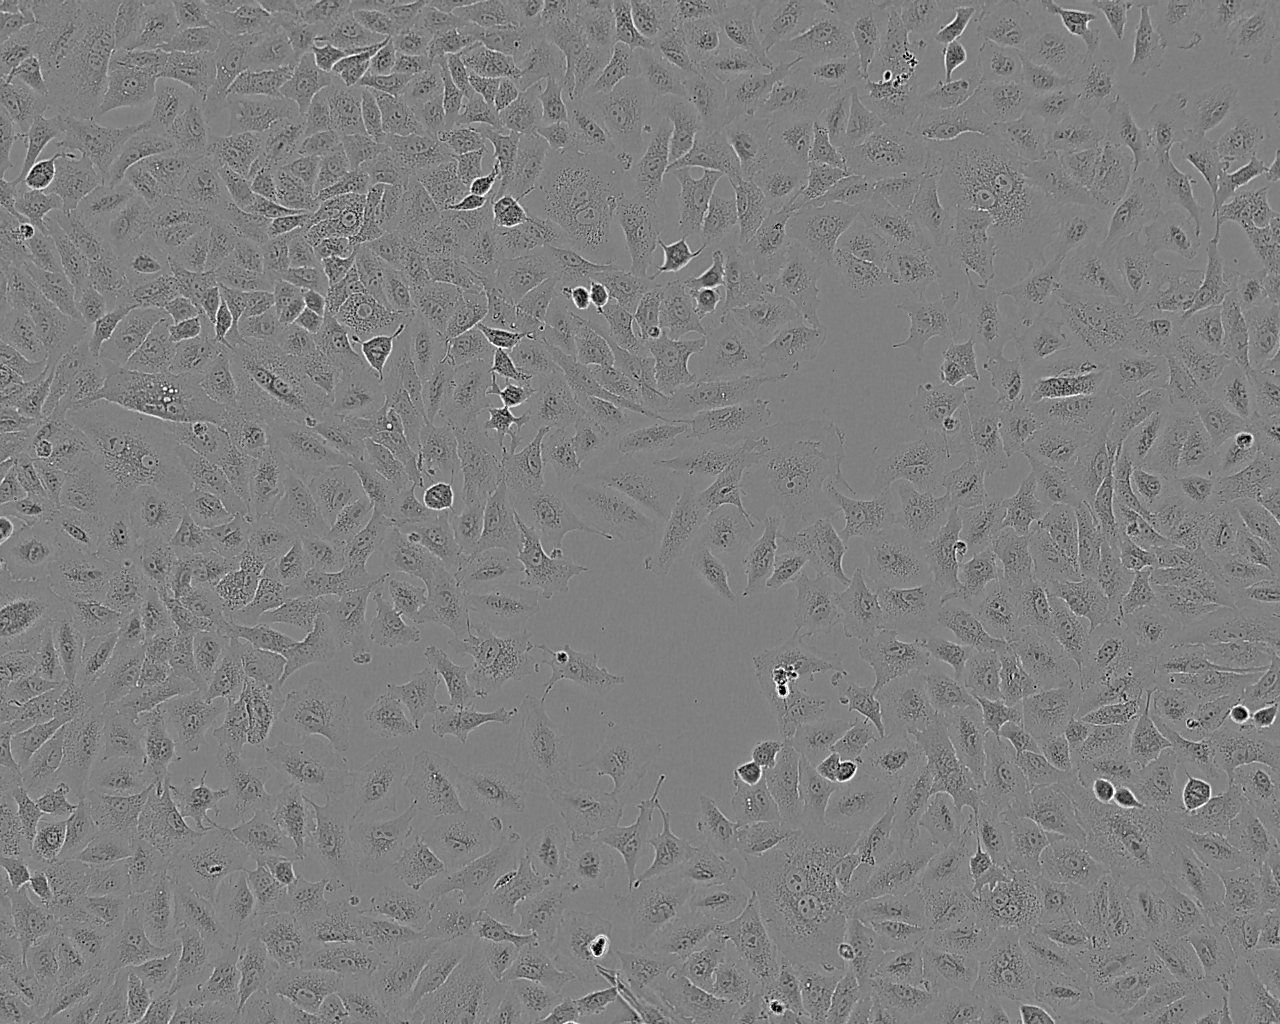 HOP-92 epithelioid cells人小细胞肺癌细胞系